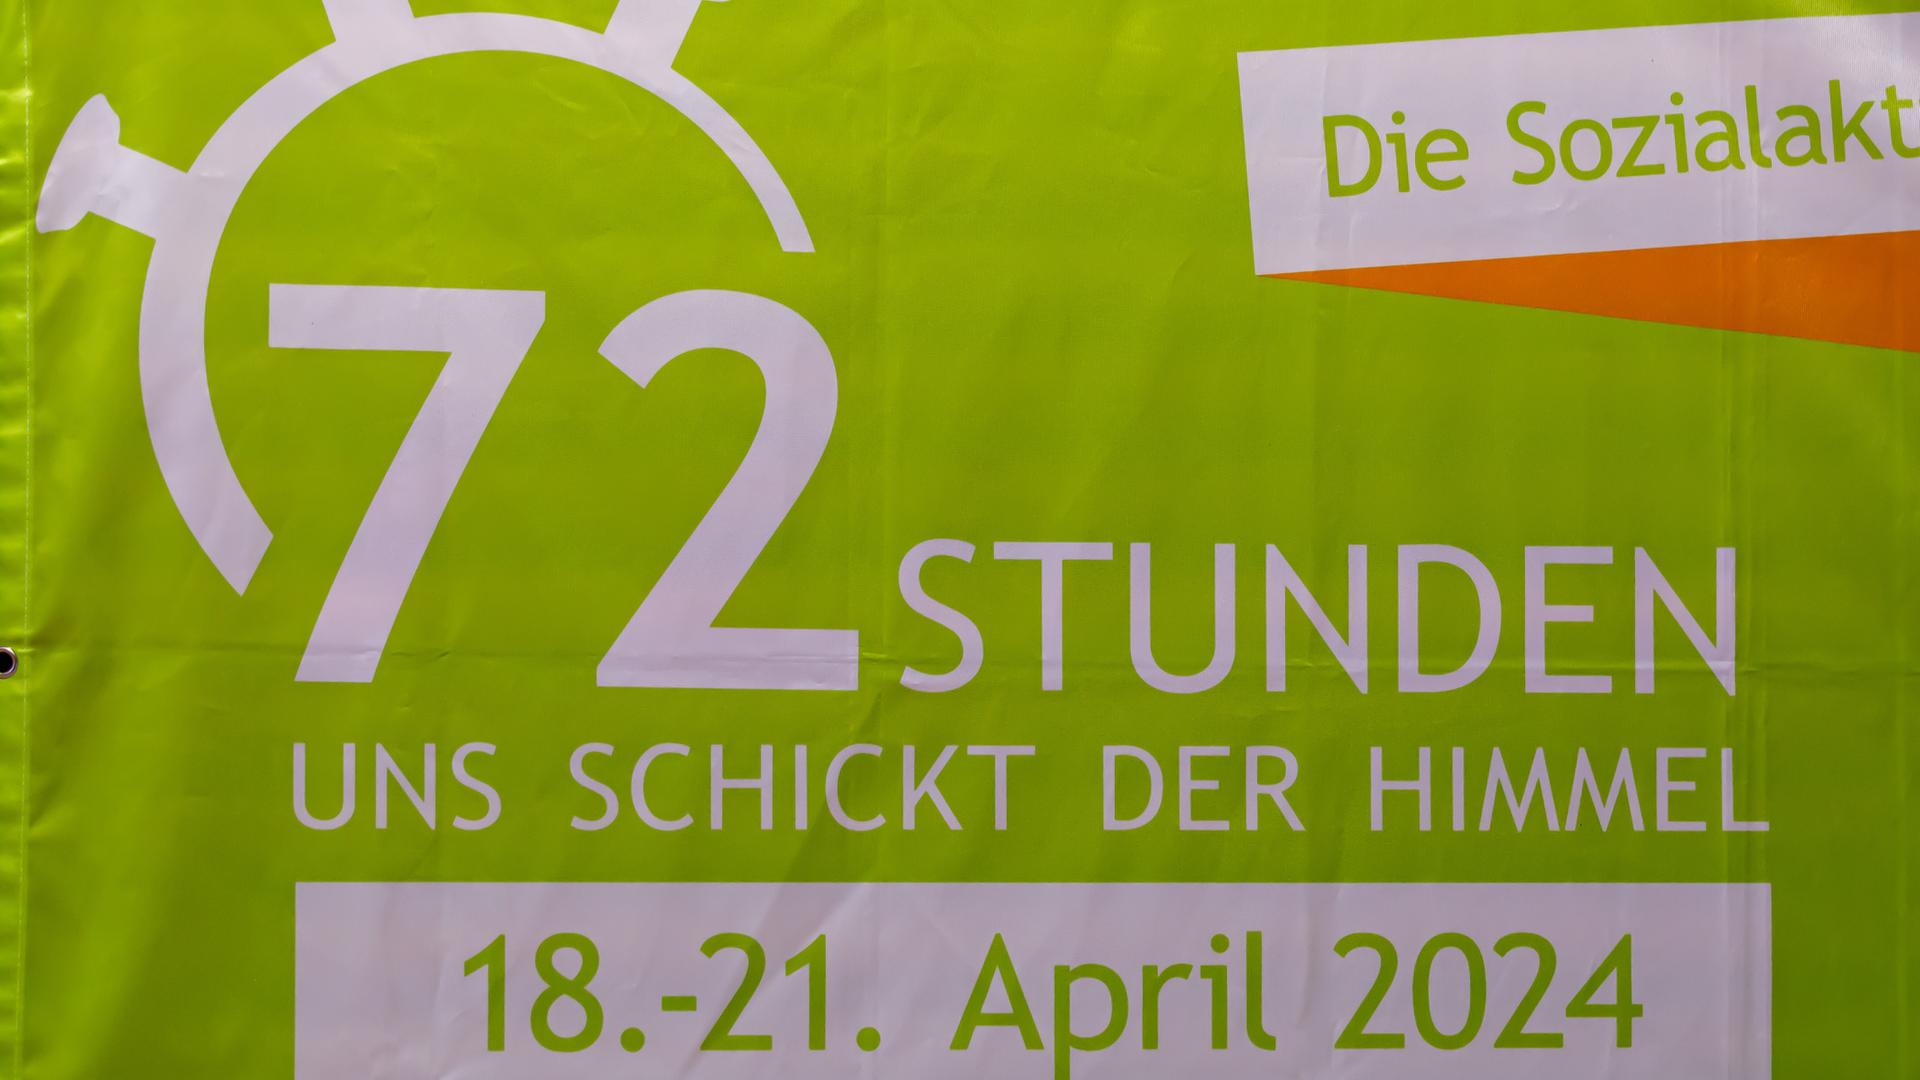 Ein grünes Stoff-Banner mit dem Logo der 72-Stunden-Aktion und den Daten 18.-21. April 2024.